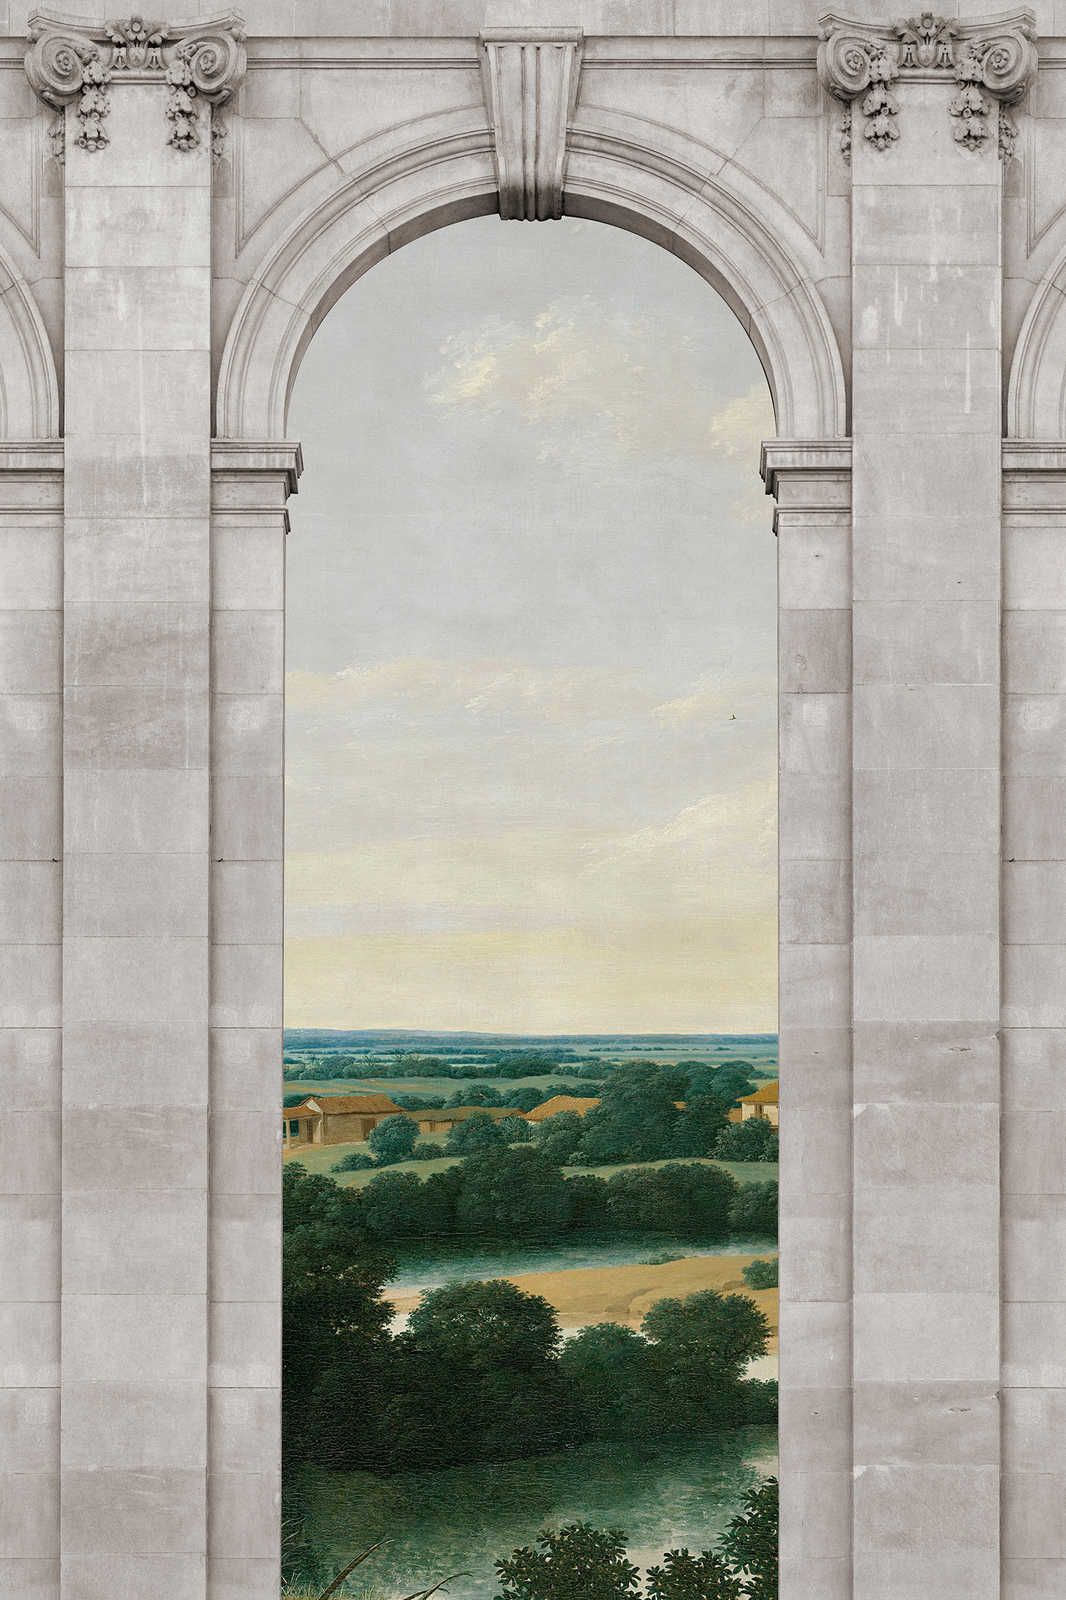             Castello 2 - Quadro su tela per finestre Arco e panorama - 1,20 m x 0,80 m
        